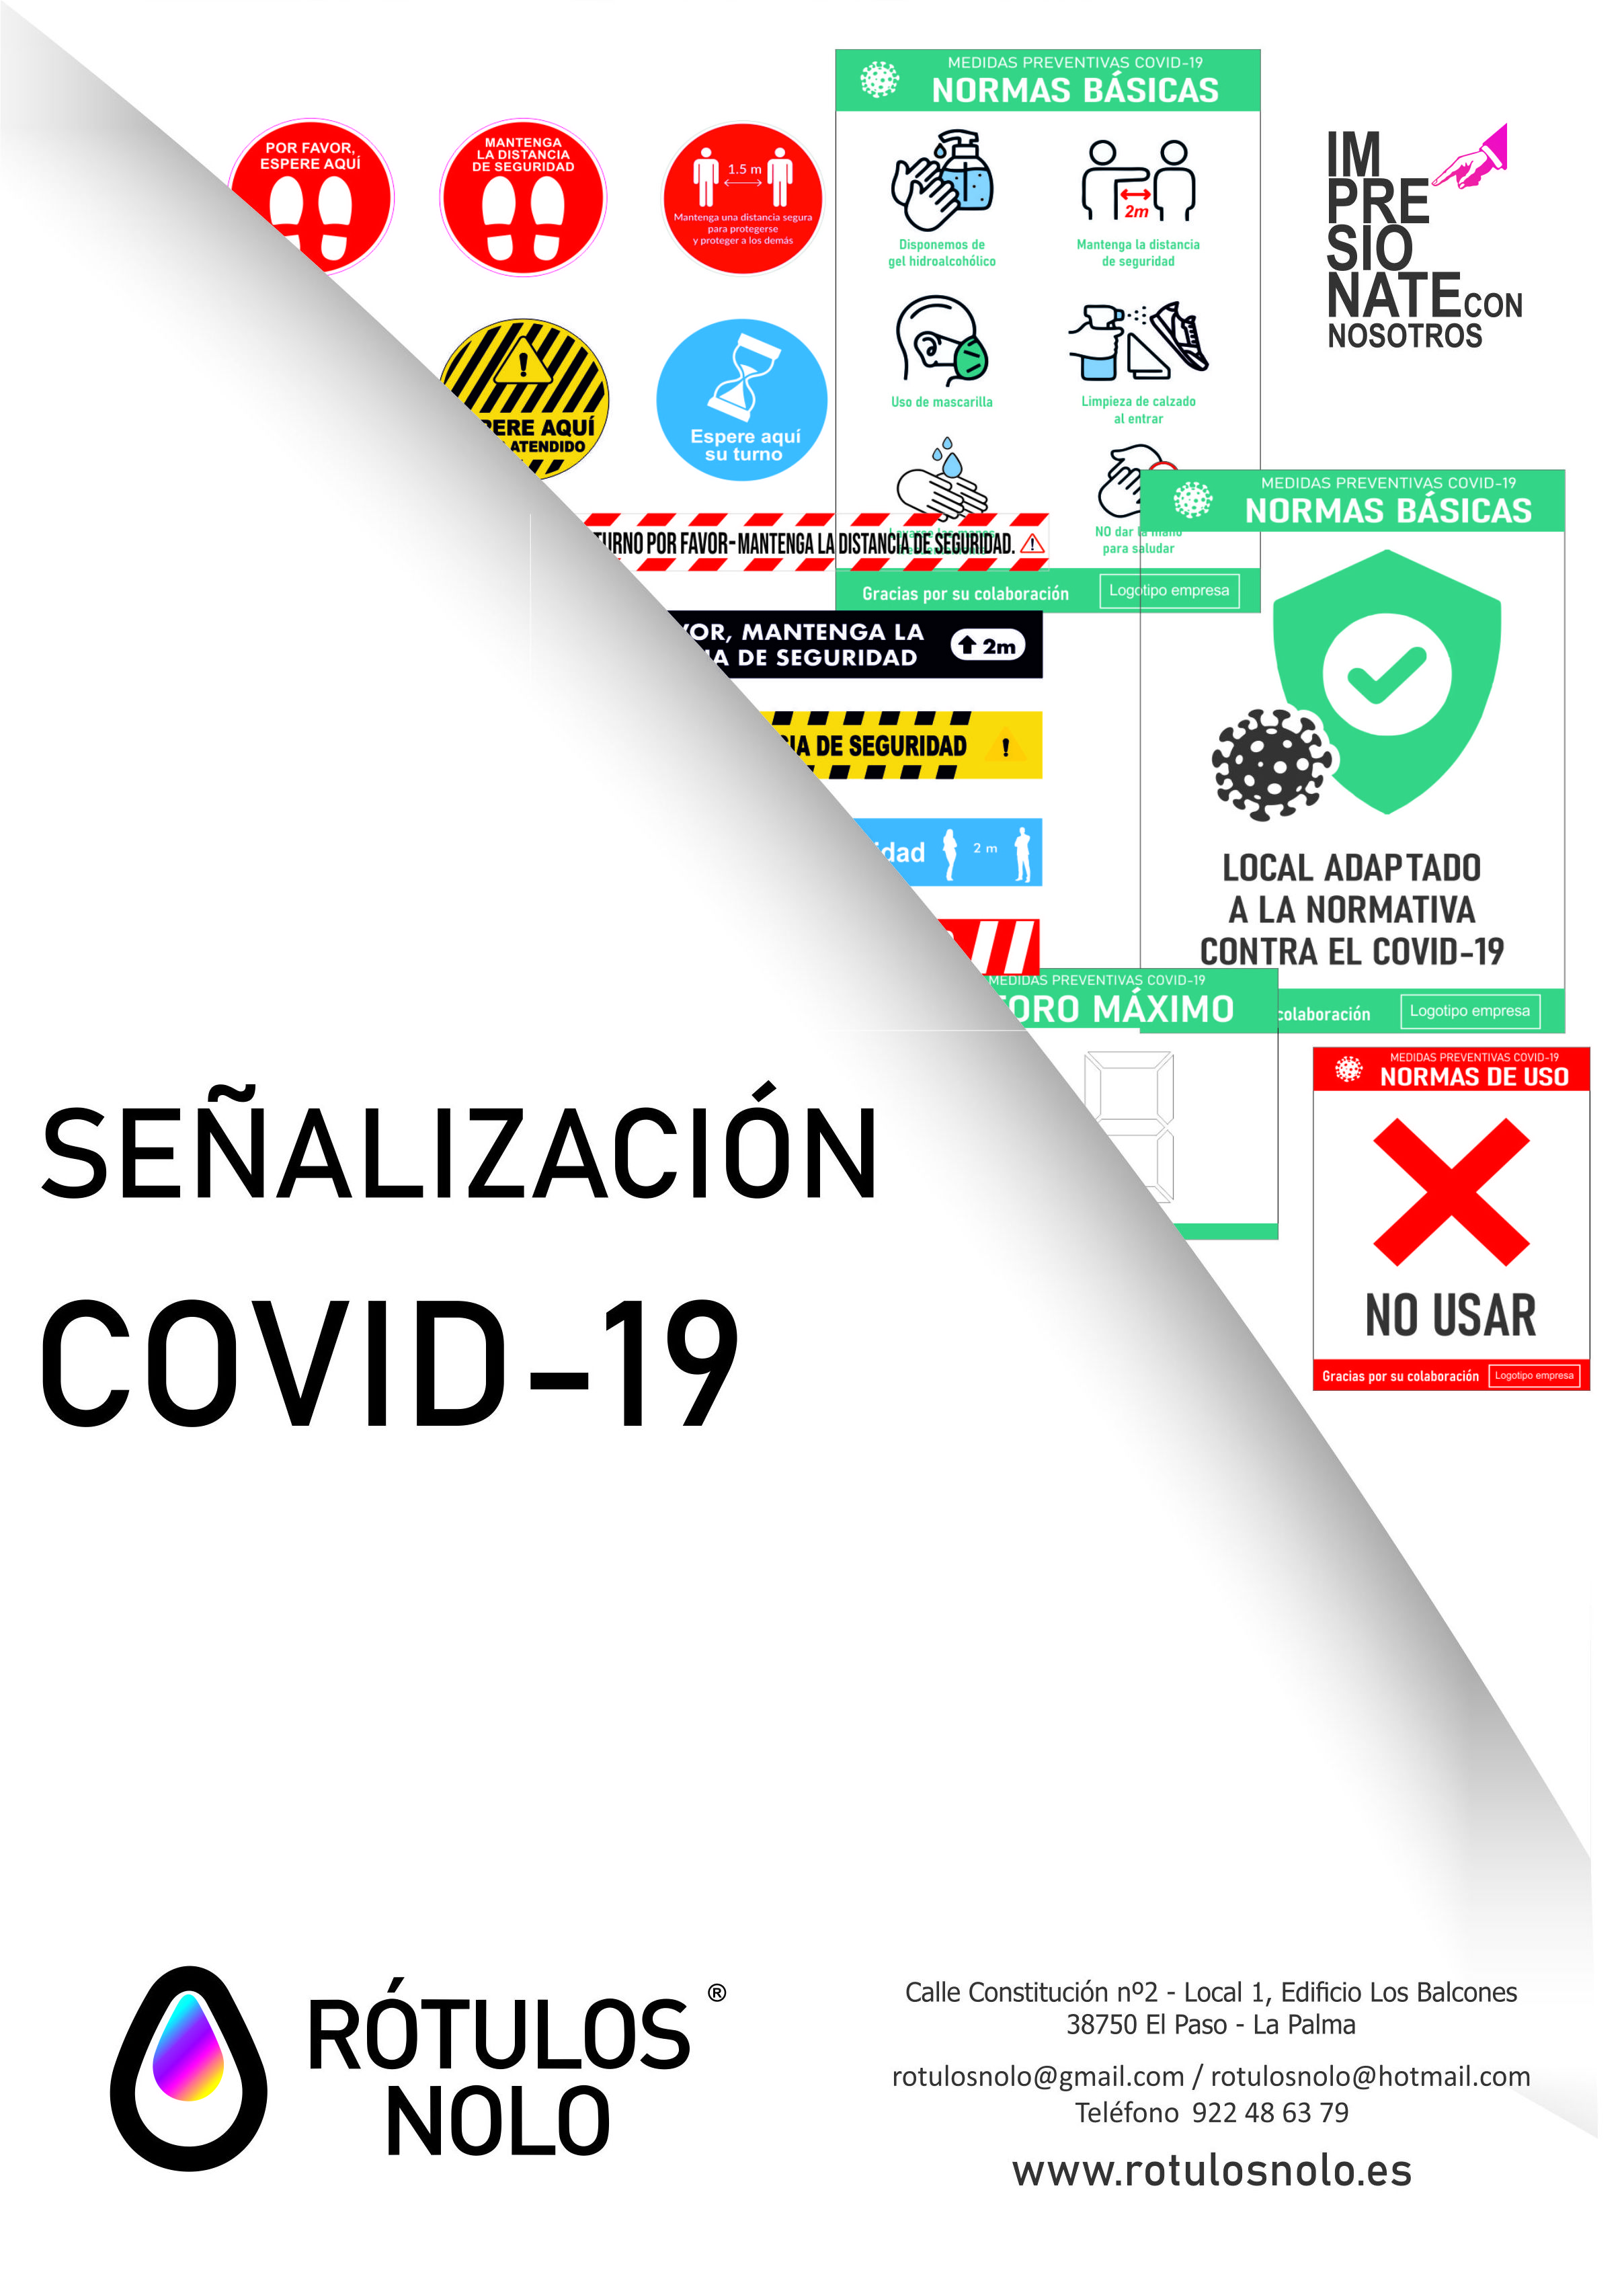 Catálogo de señalización Covid-19: Servicios de Rótulos Nolo }}